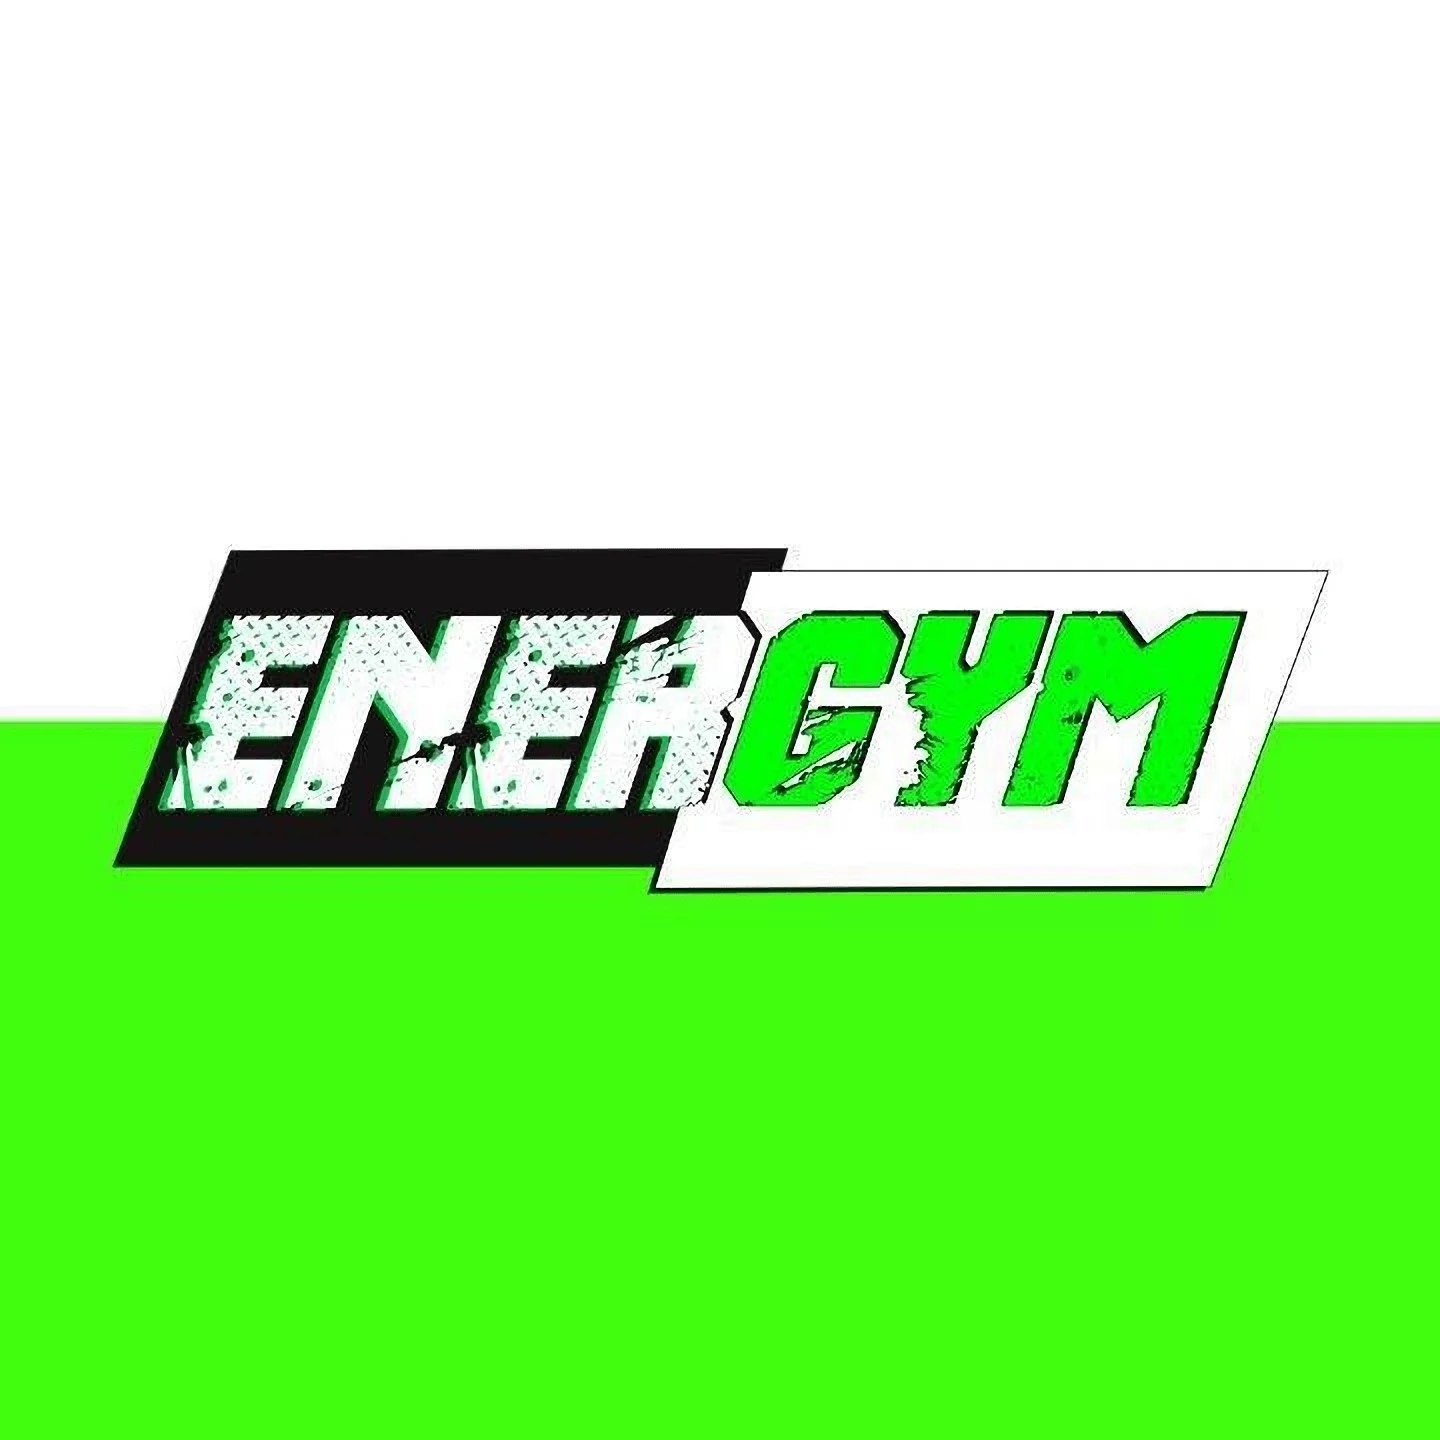 Gimnasio-energym-club-9411